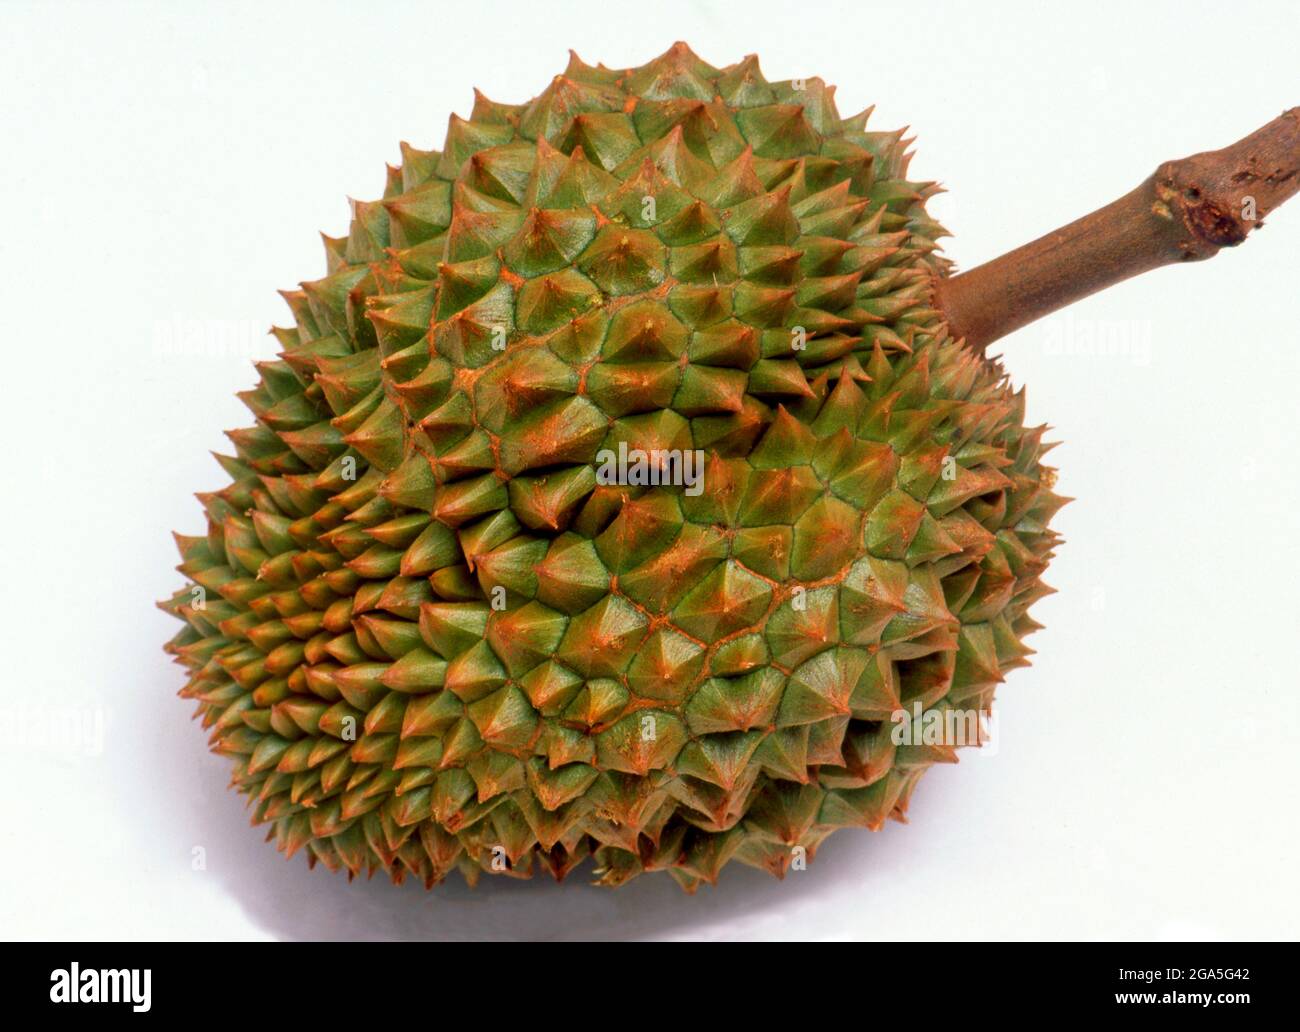 Welt: Durian (Durio sensu lato ist eine große Frucht aus Südostasien. Der Durian wird von vielen Menschen in Südostasien als der „König der Früchte“ angesehen und ist durch seine große Größe, seinen starken Geruch und seine beeindruckende dornbedeckte Schale gekennzeichnet. Die Frucht kann bis zu 30 Zentimeter (12 Zoll) lang und 15 Zentimeter (6 Zoll) im Durchmesser wachsen und wiegt in der Regel ein bis drei Kilogramm (2 bis 7 lb). Seine Form reicht von länglich bis rund, die Farbe seiner Schale grün bis braun, und sein Fleisch blassgelb bis rot, je nach Art. Stockfoto